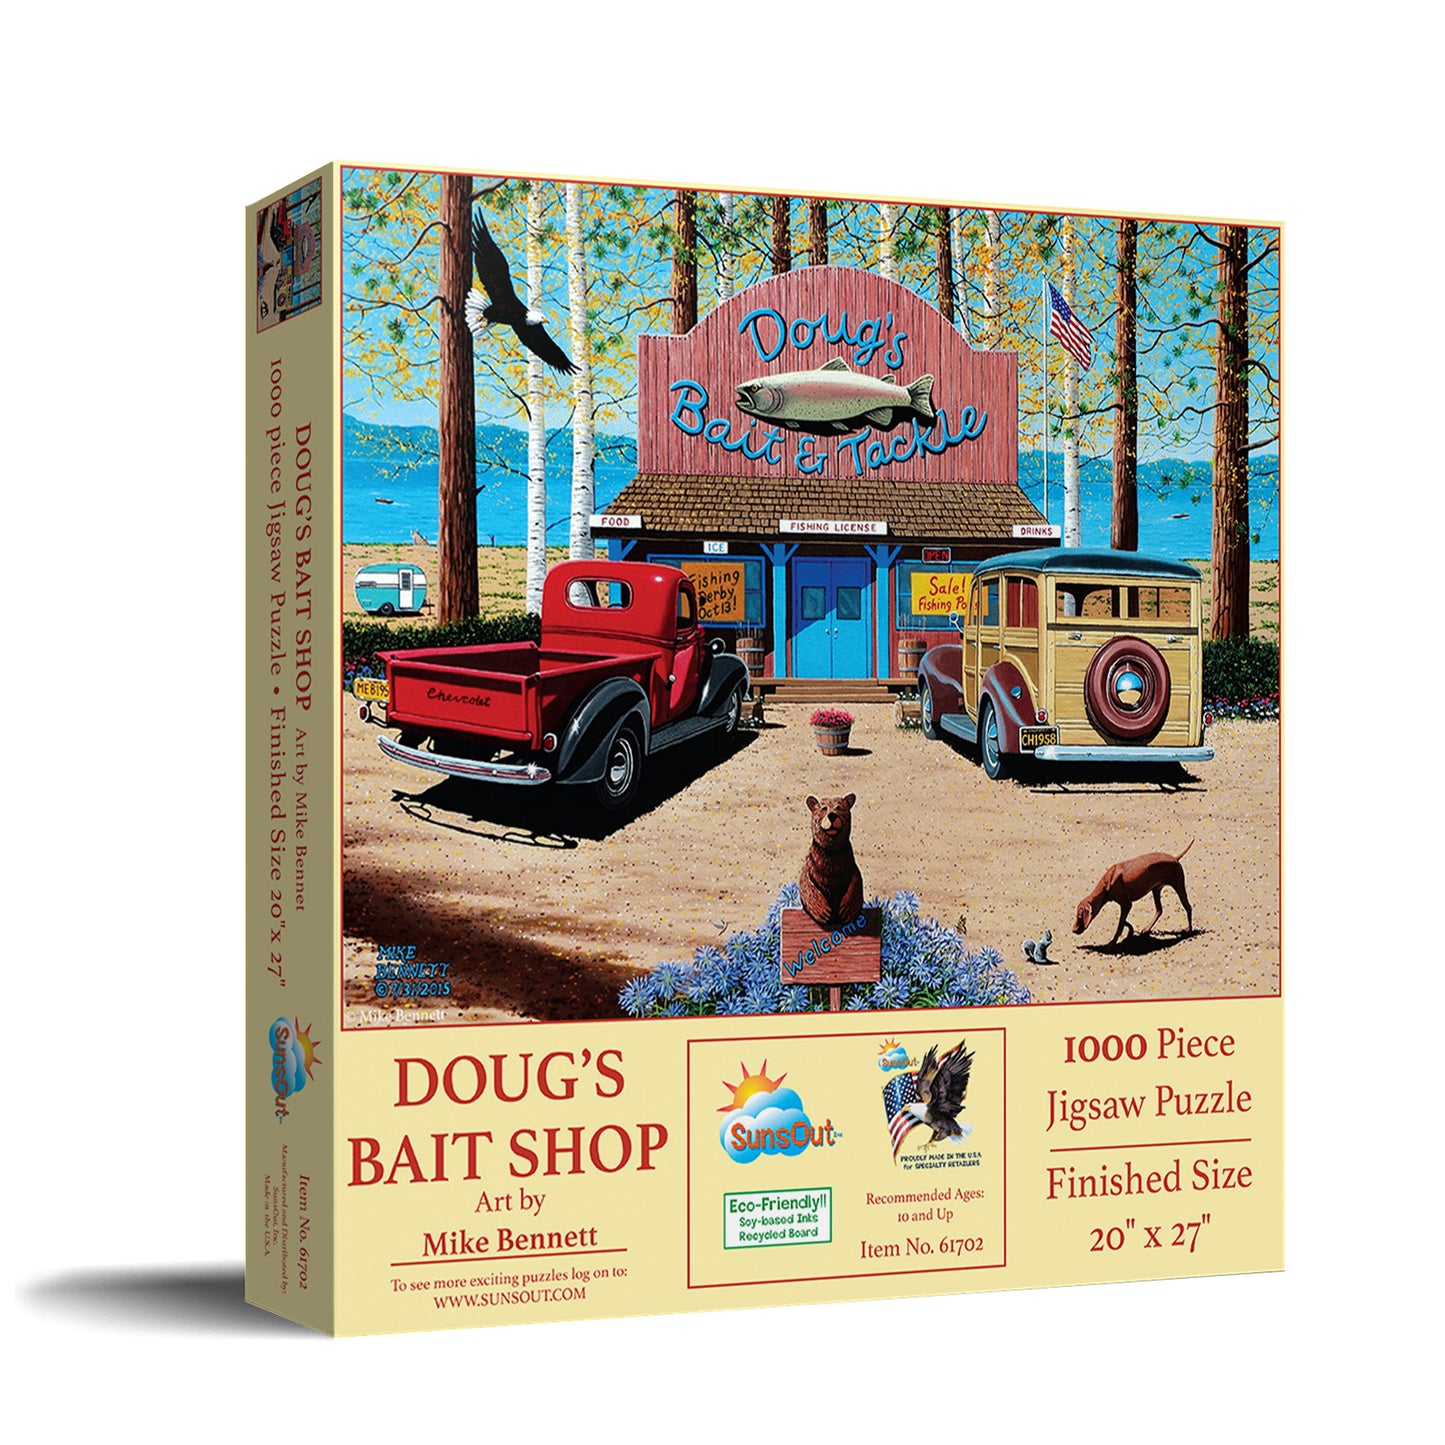 Doug's Bait Shop - 1000 Piece Jigsaw Puzzle